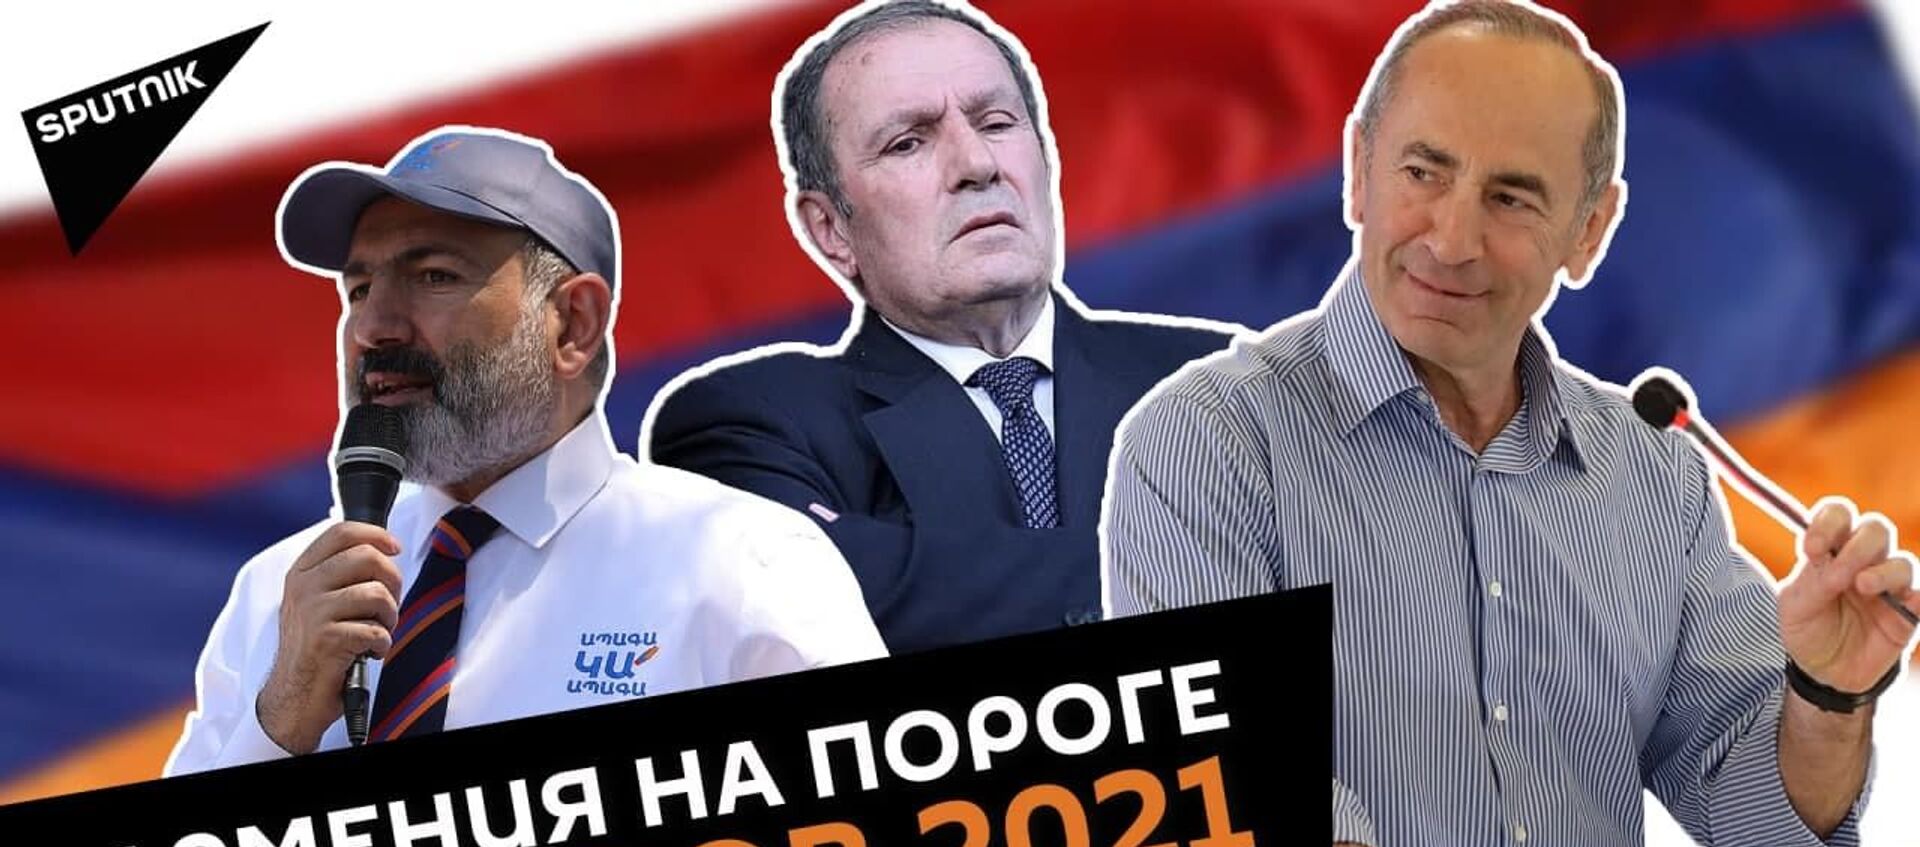 Досрочные парламентские выборы в Армении 2021: старт агитации - Sputnik Армения, 1920, 07.06.2021